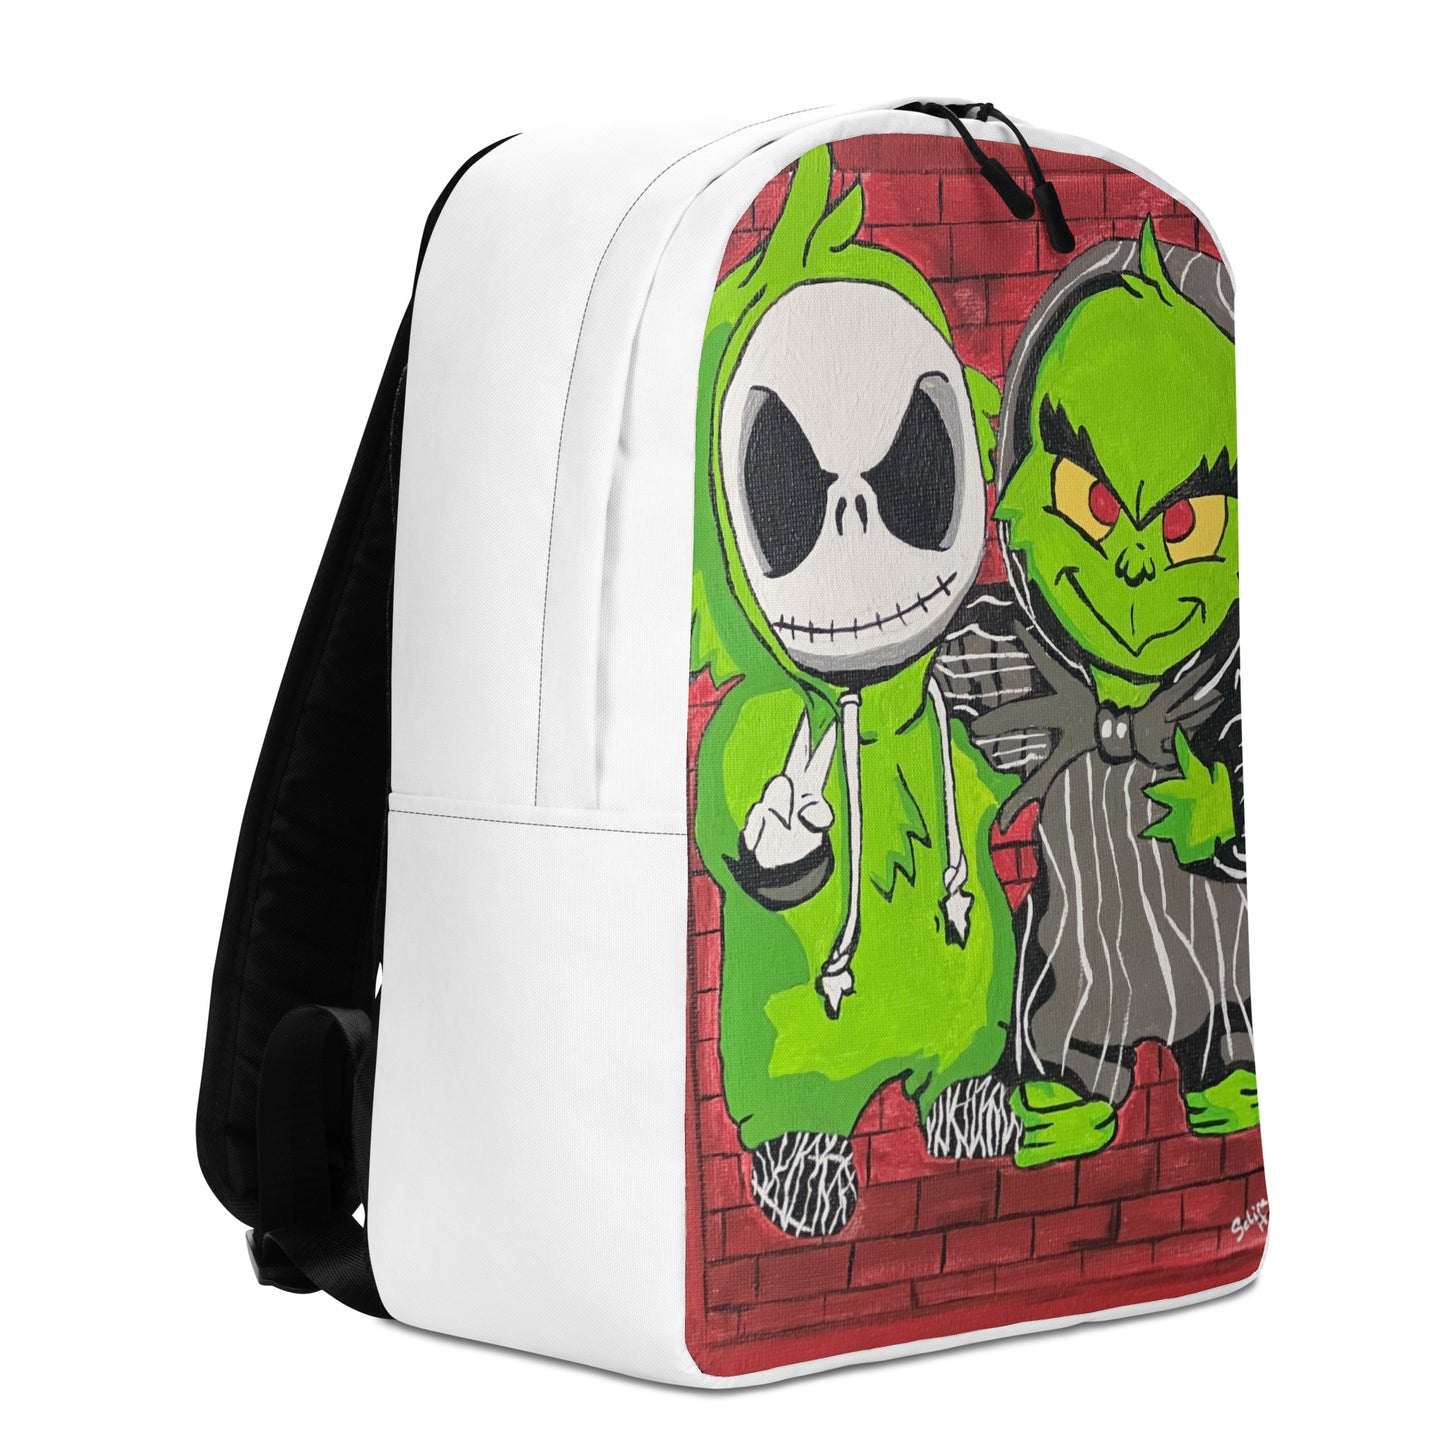 Lil Jack & Lil Grinch Chillen Backpack